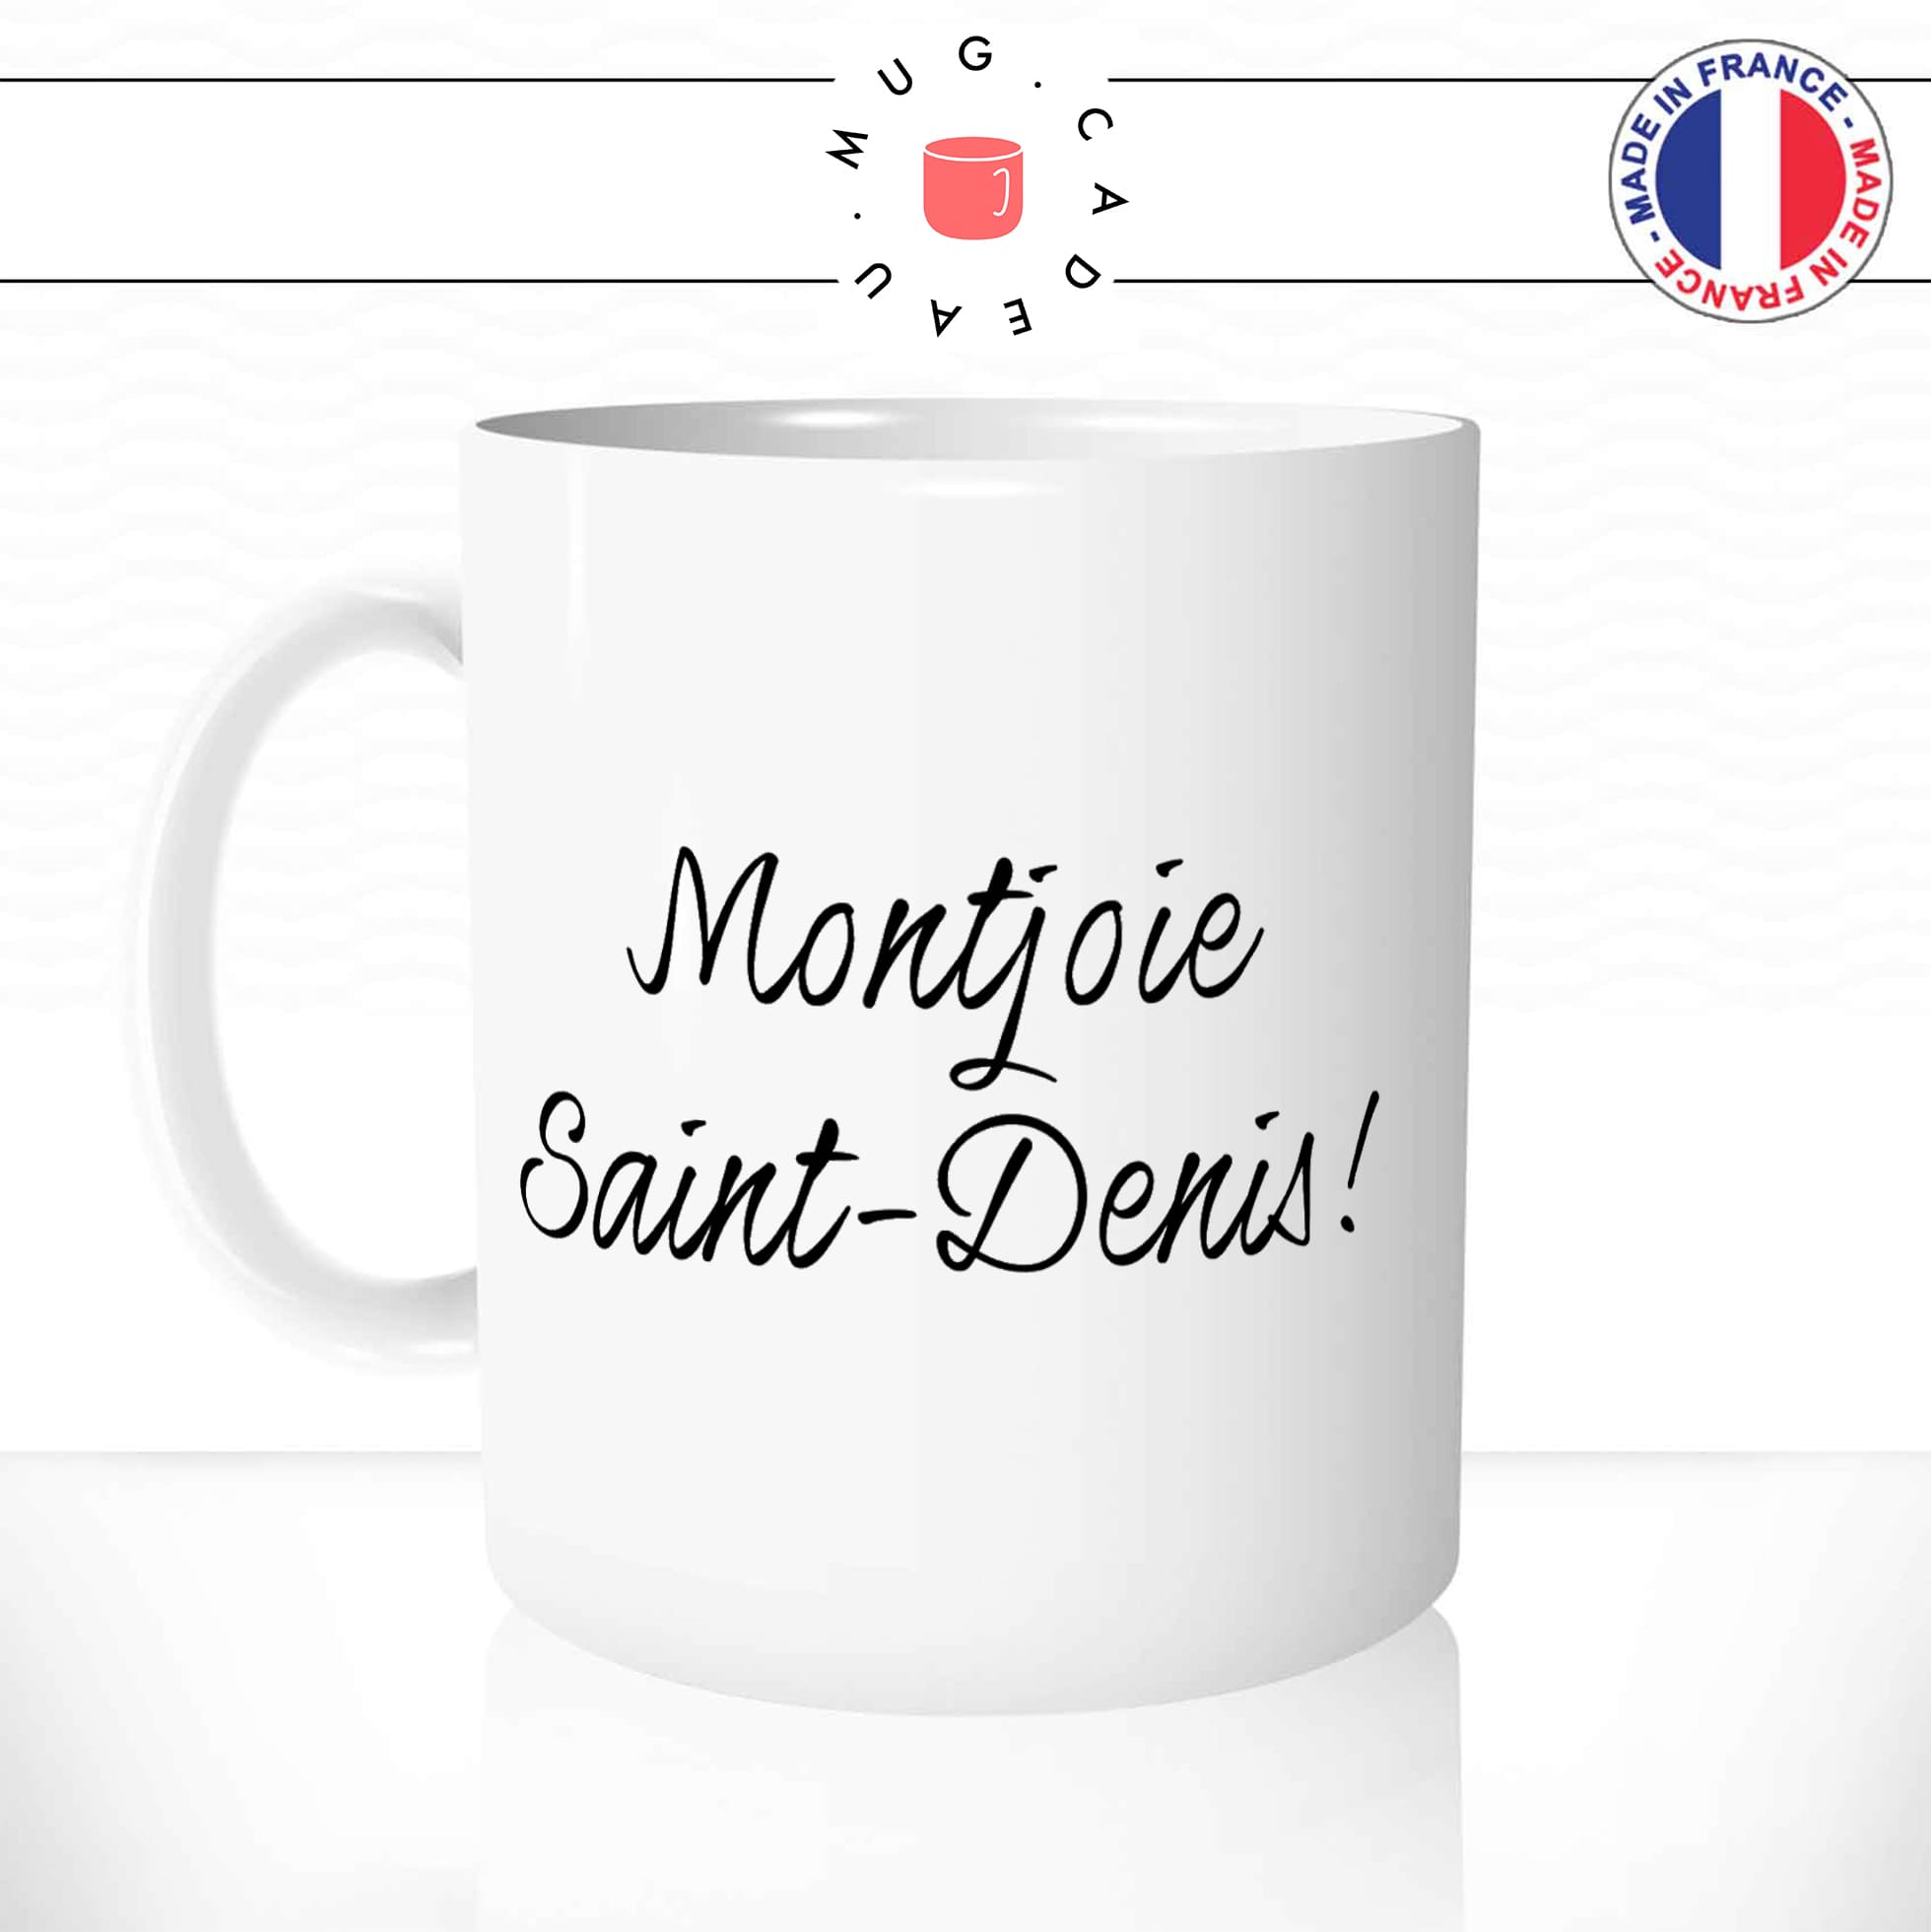 mug-tasse-blanc-unique-montjoie-saint-denis-les-visiteurs-gifle-homme-femme-film-francais-humour-fun-cool-idée-cadeau-original